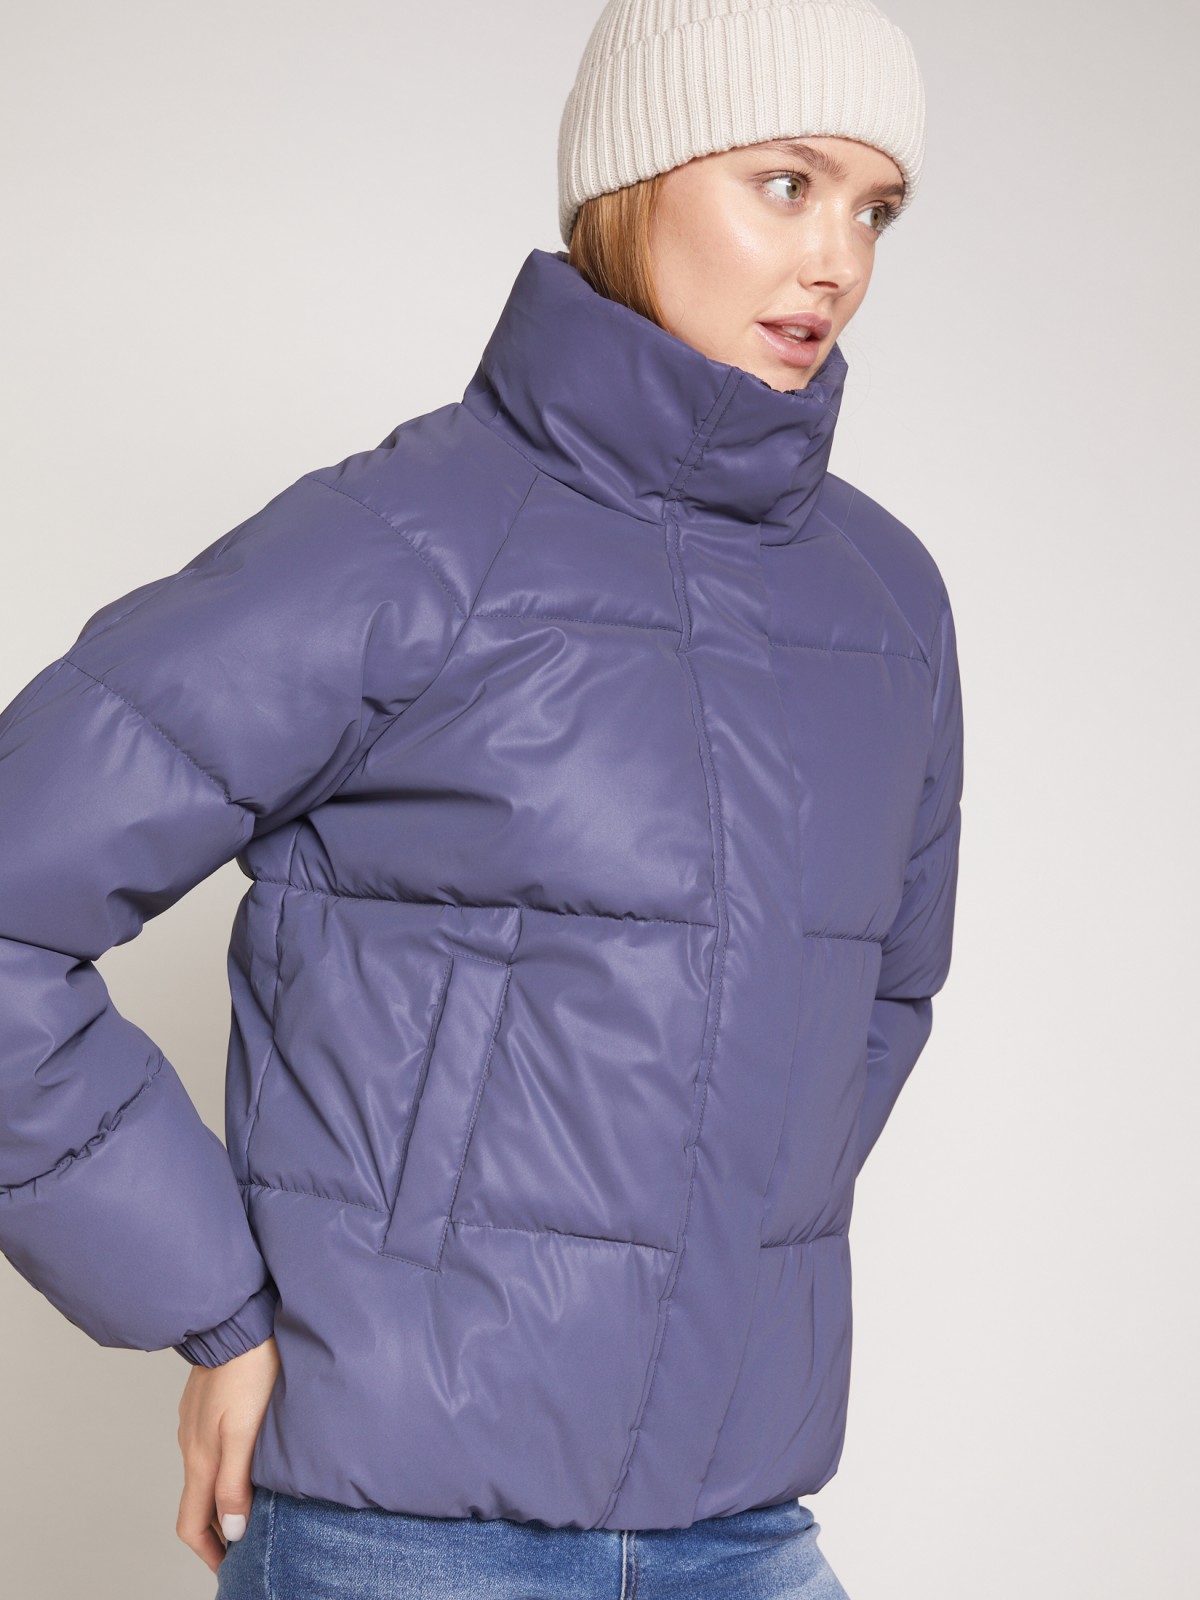 Тёплая куртка со светоотражающим эффектом zolla 021335123144, цвет сливовый, размер XS - фото 5